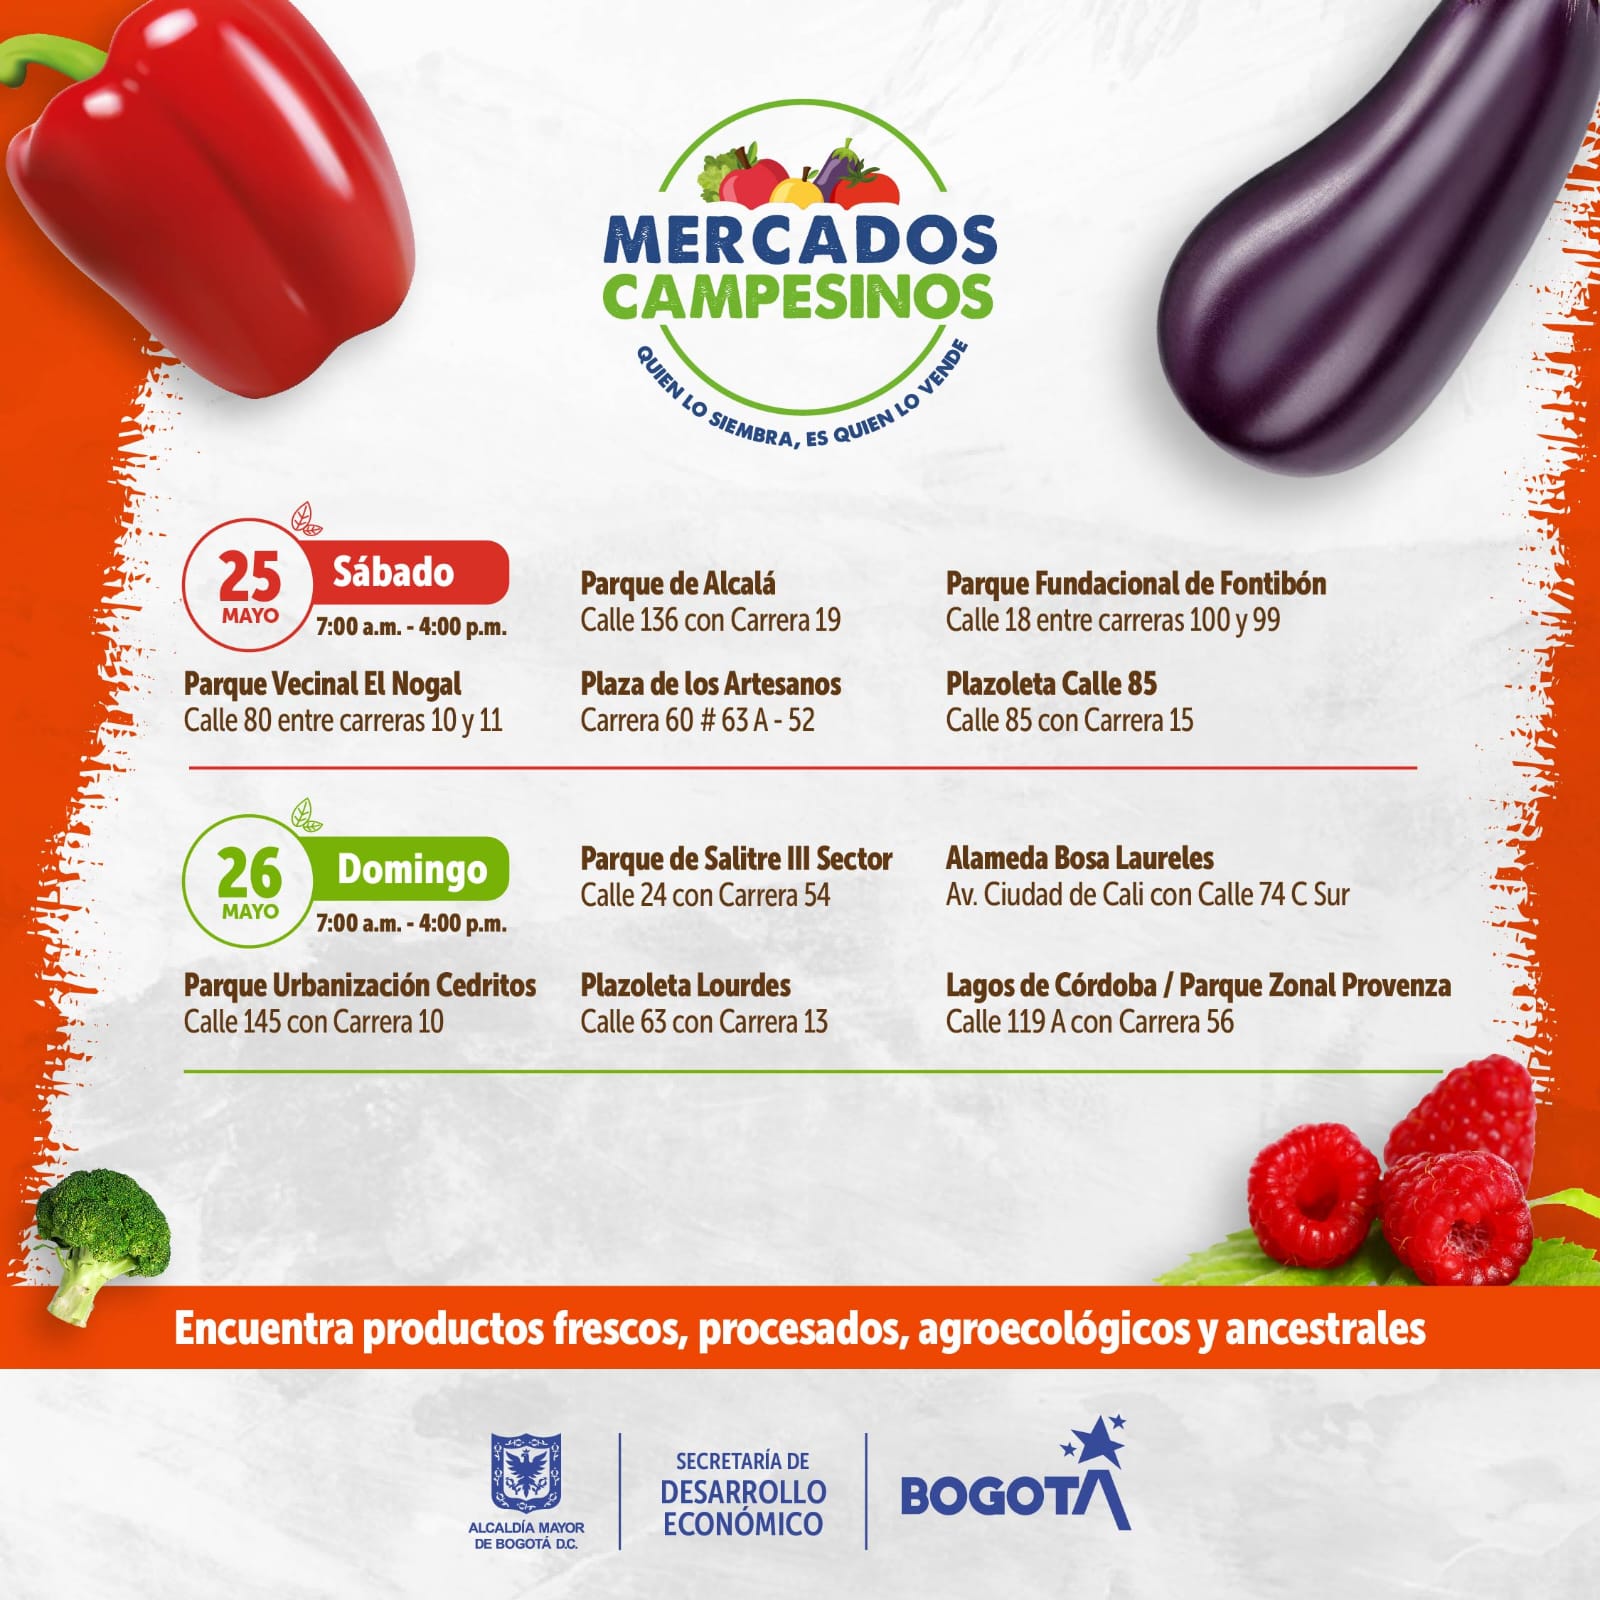 Del campo a la cuidad: Mercados Campesinos en Bogotá del 24 al 26 de mayo 